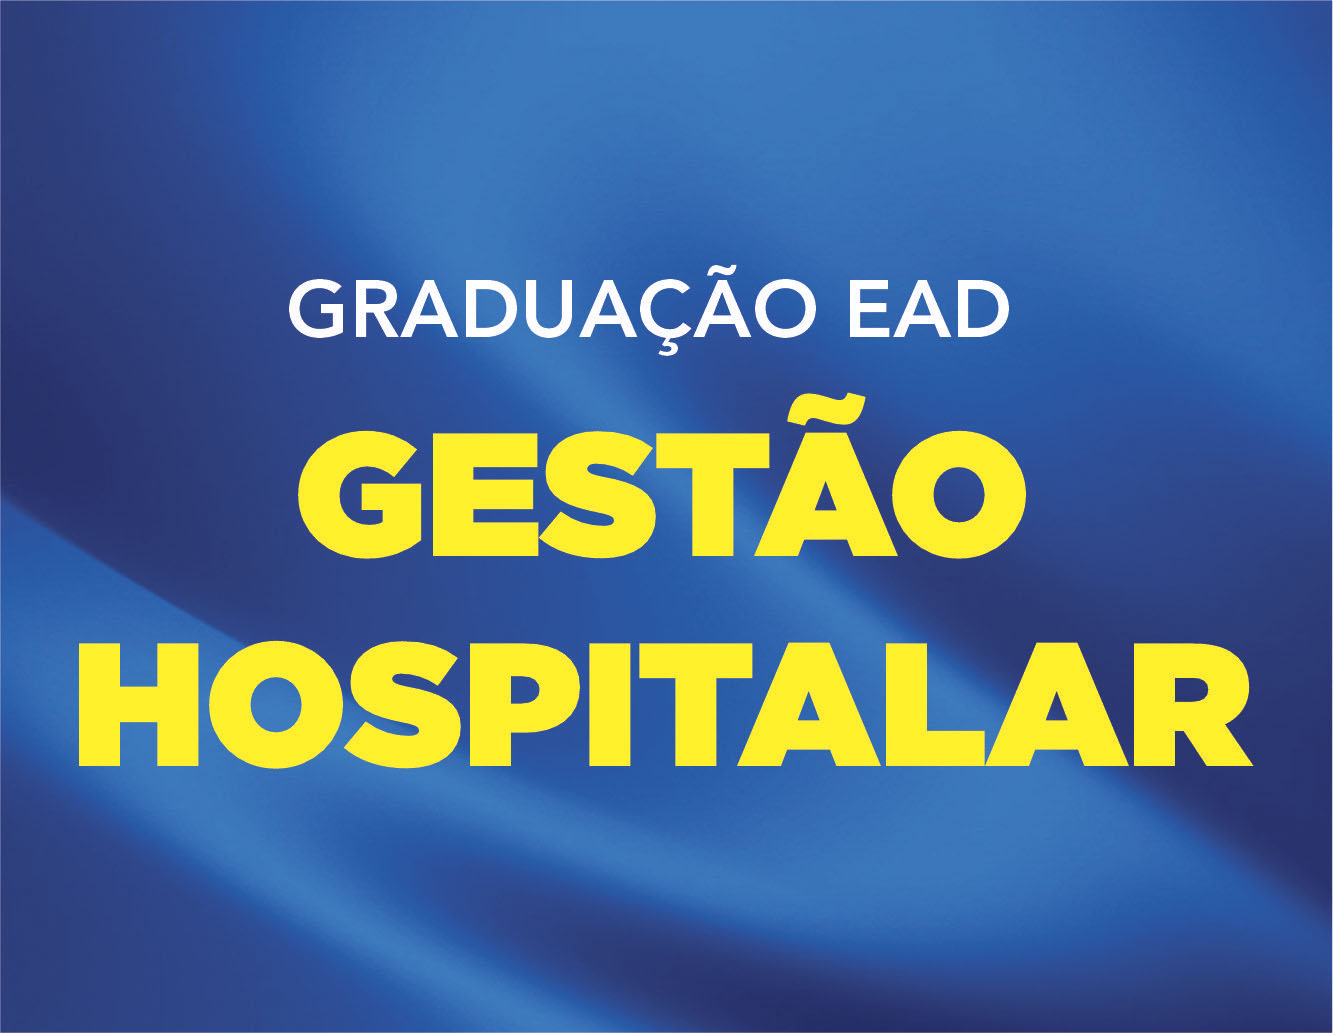 GESTÃO HOSPITAL